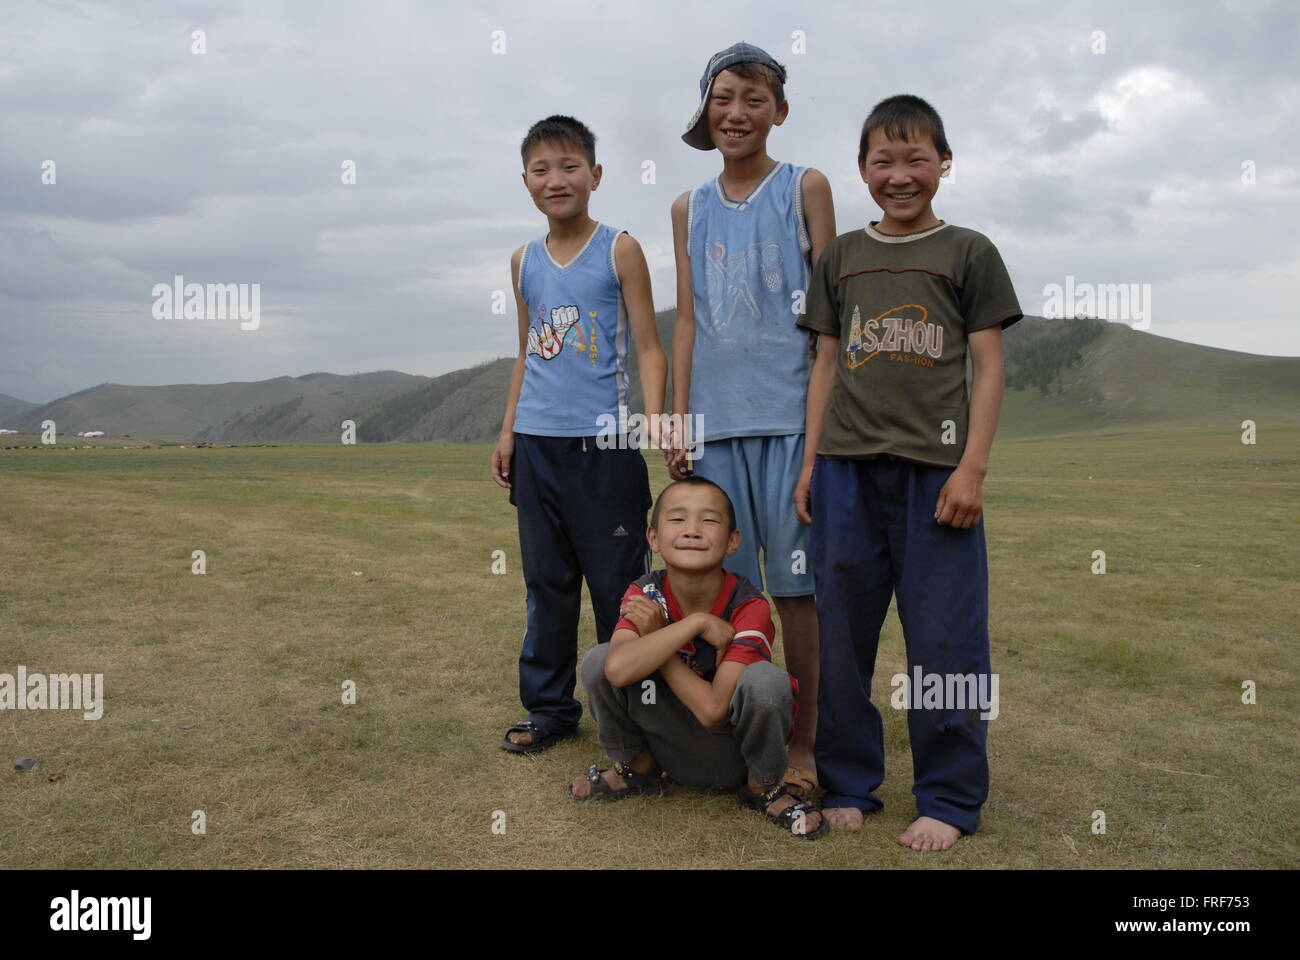 Mongolie - 27/07/2010 - Mongolie / Arkhangai - enfants mongols dans l'Arkhangai - Sandrine Huet / Le Pictorium Banque D'Images